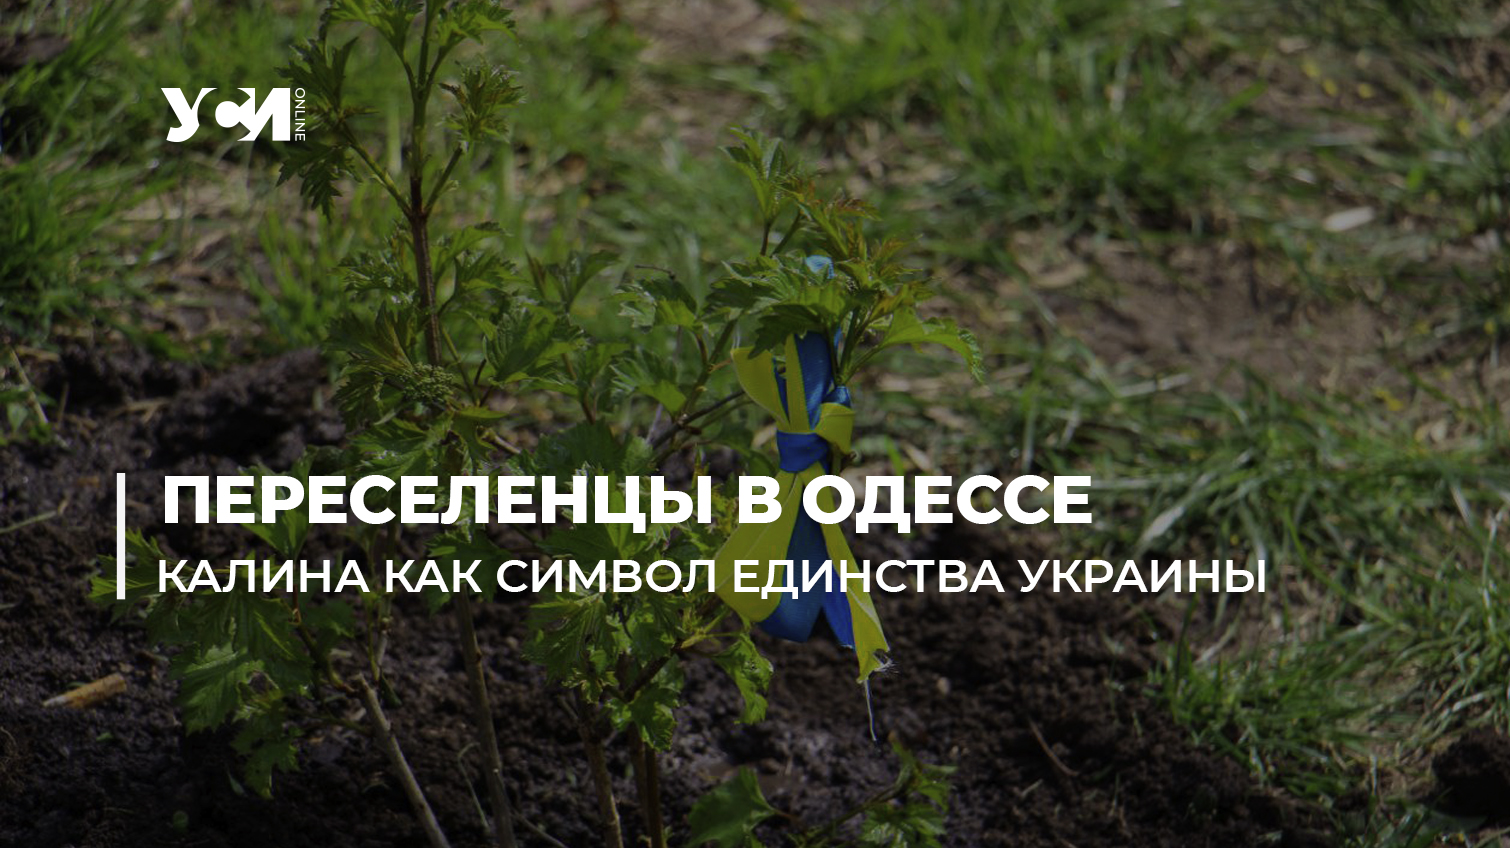 Мы украинцы – этого никто не изменит: в знак единства в Одессе высадили деревья калины (фото, видео) «фото»